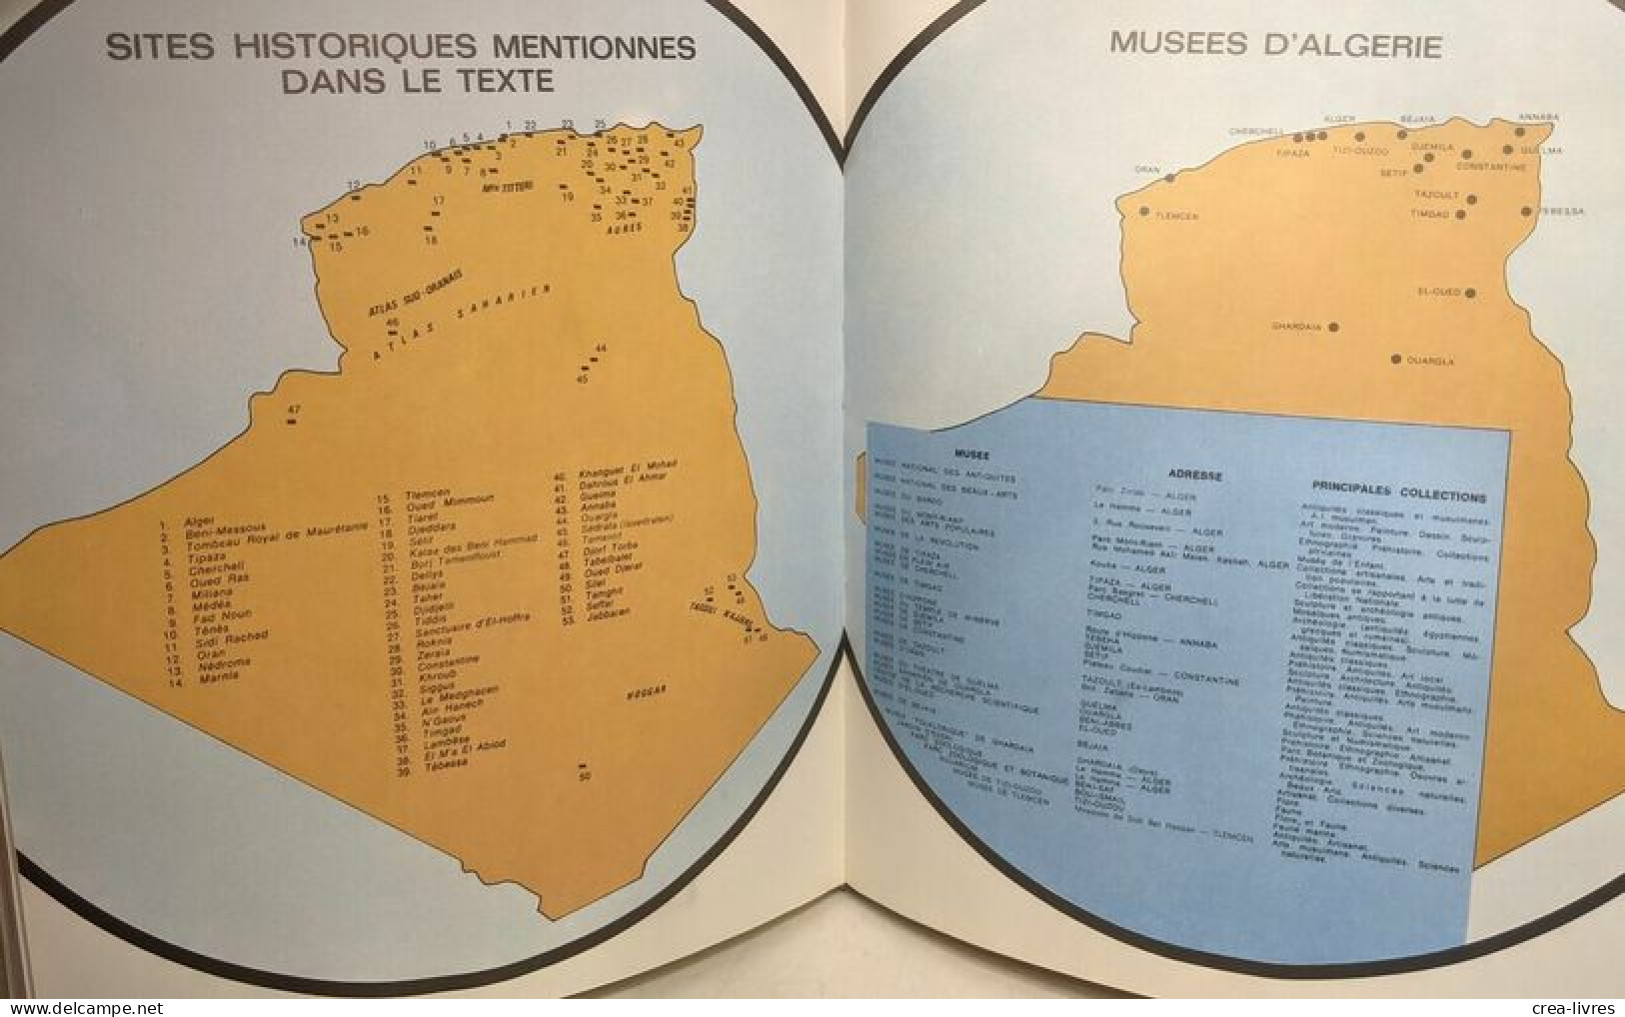 Cites antiques d'Algérie (1977) + Musées d'Algérie I. Reflets du passé TOME 1 (1974)- collection Art et Culture